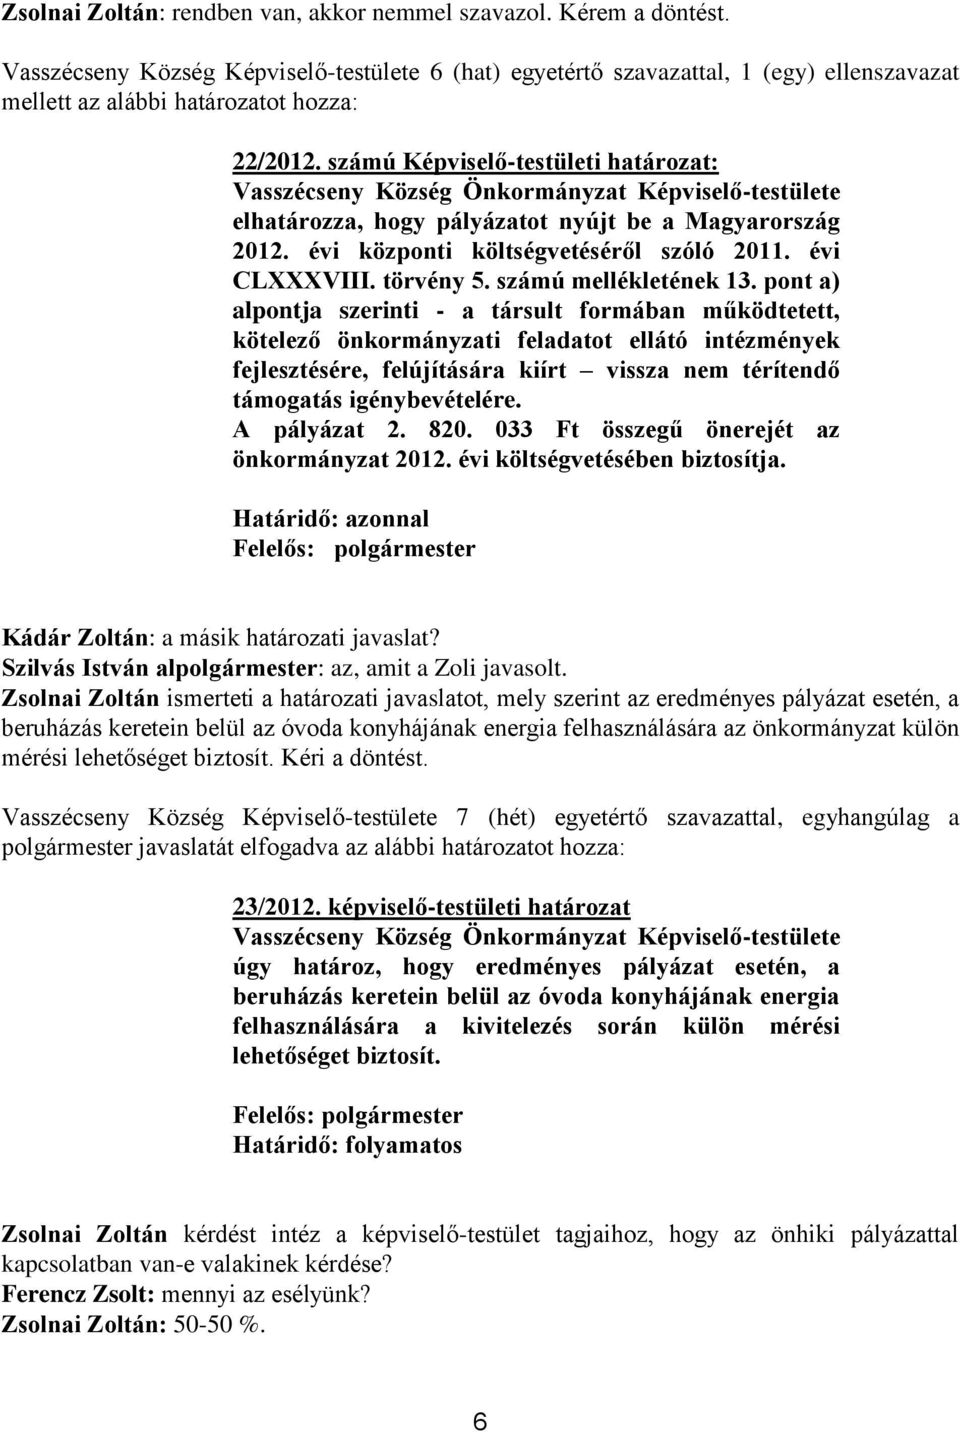 számú Képviselő-testületi határozat: Vasszécseny Község Önkormányzat Képviselő-testülete elhatározza, hogy pályázatot nyújt be a Magyarország 2012. évi központi költségvetéséről szóló 2011.